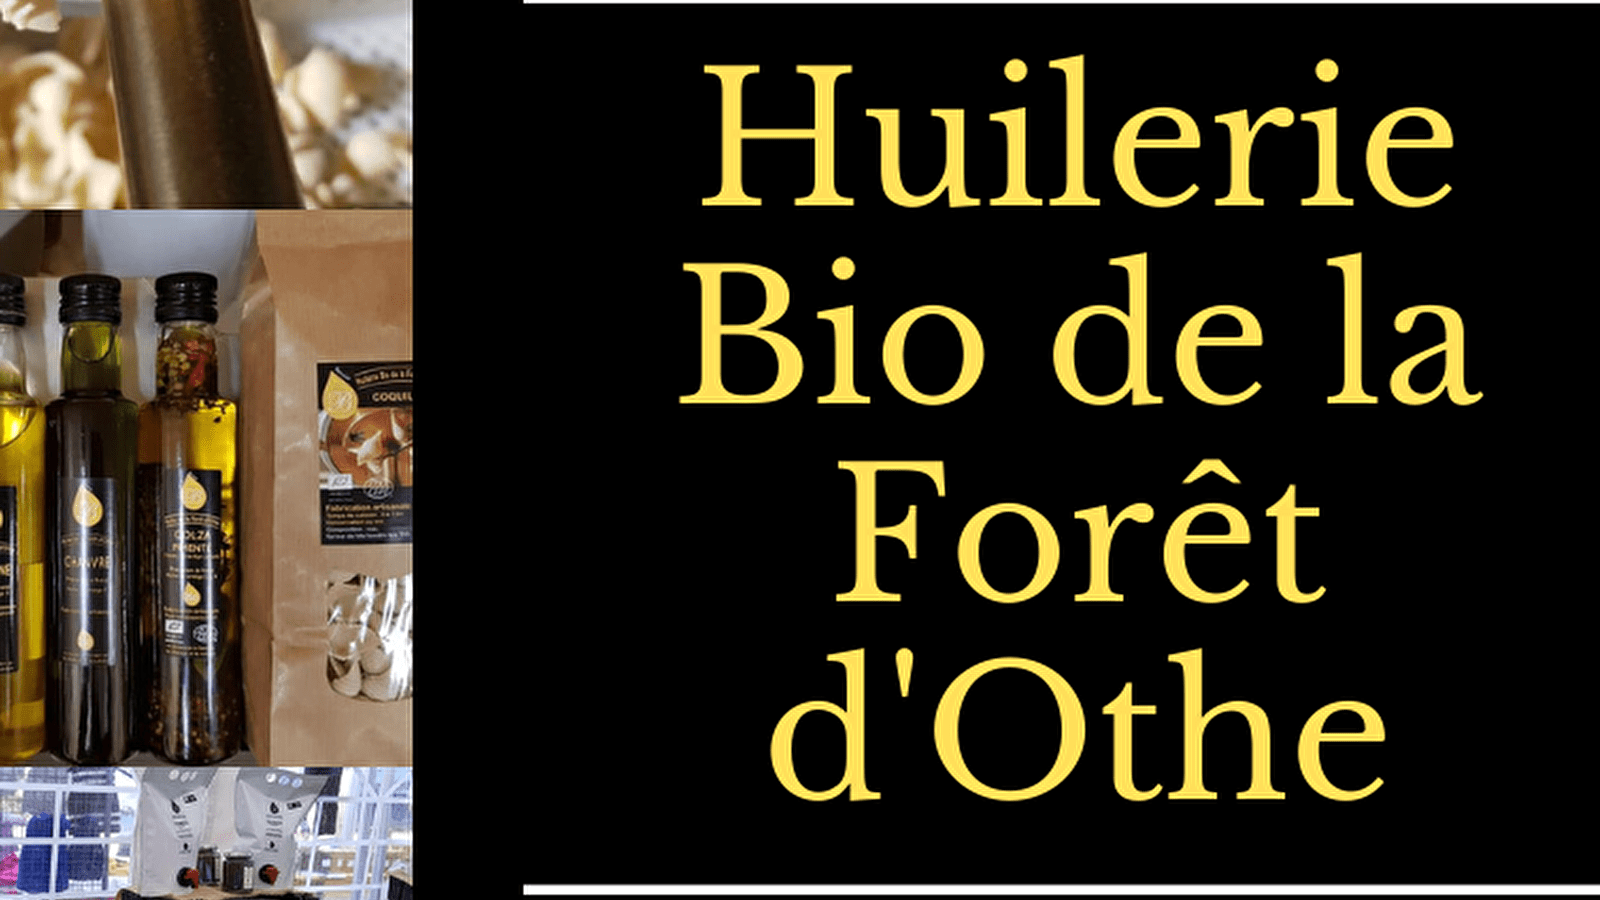 Huilerie Bio de la Forêt d'Othe